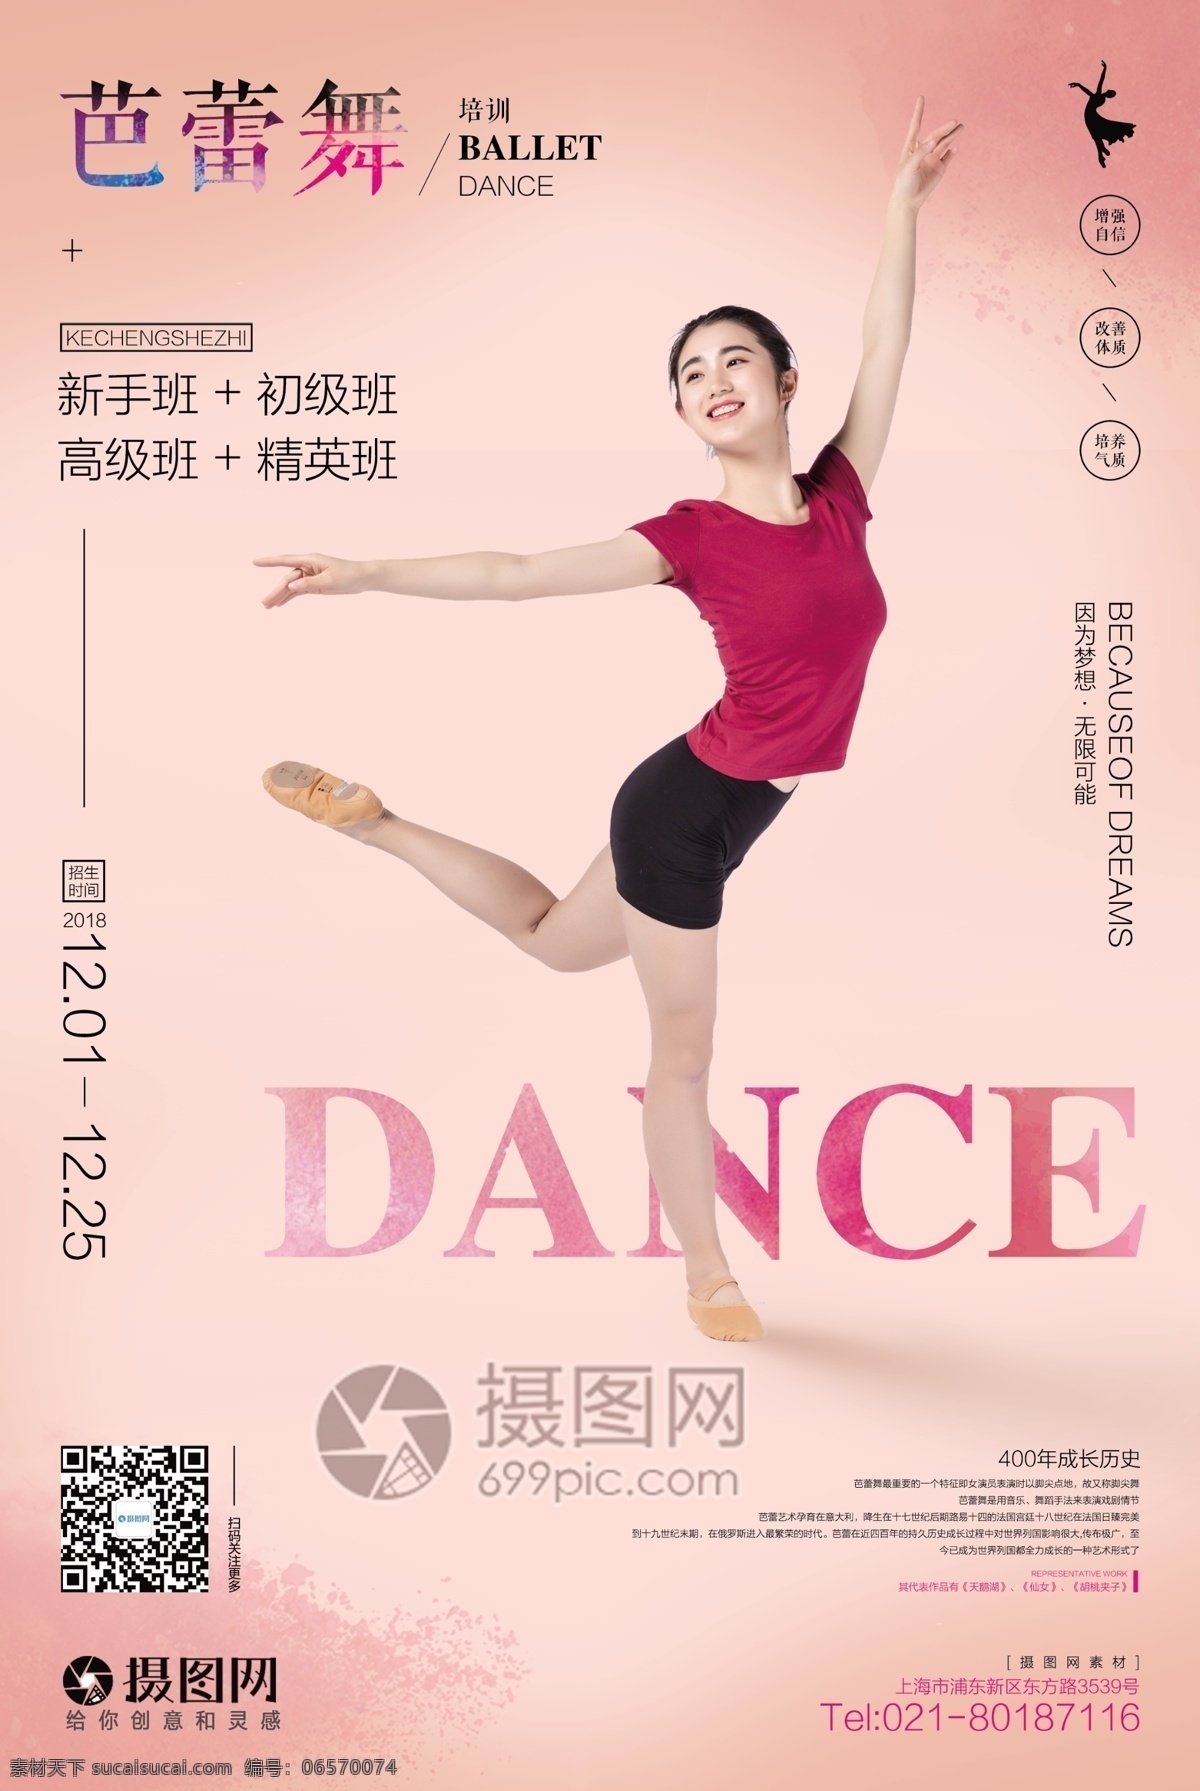 芭蕾舞 培训 海报 舞蹈培训 芭蕾舞招生 芭蕾 招生海报